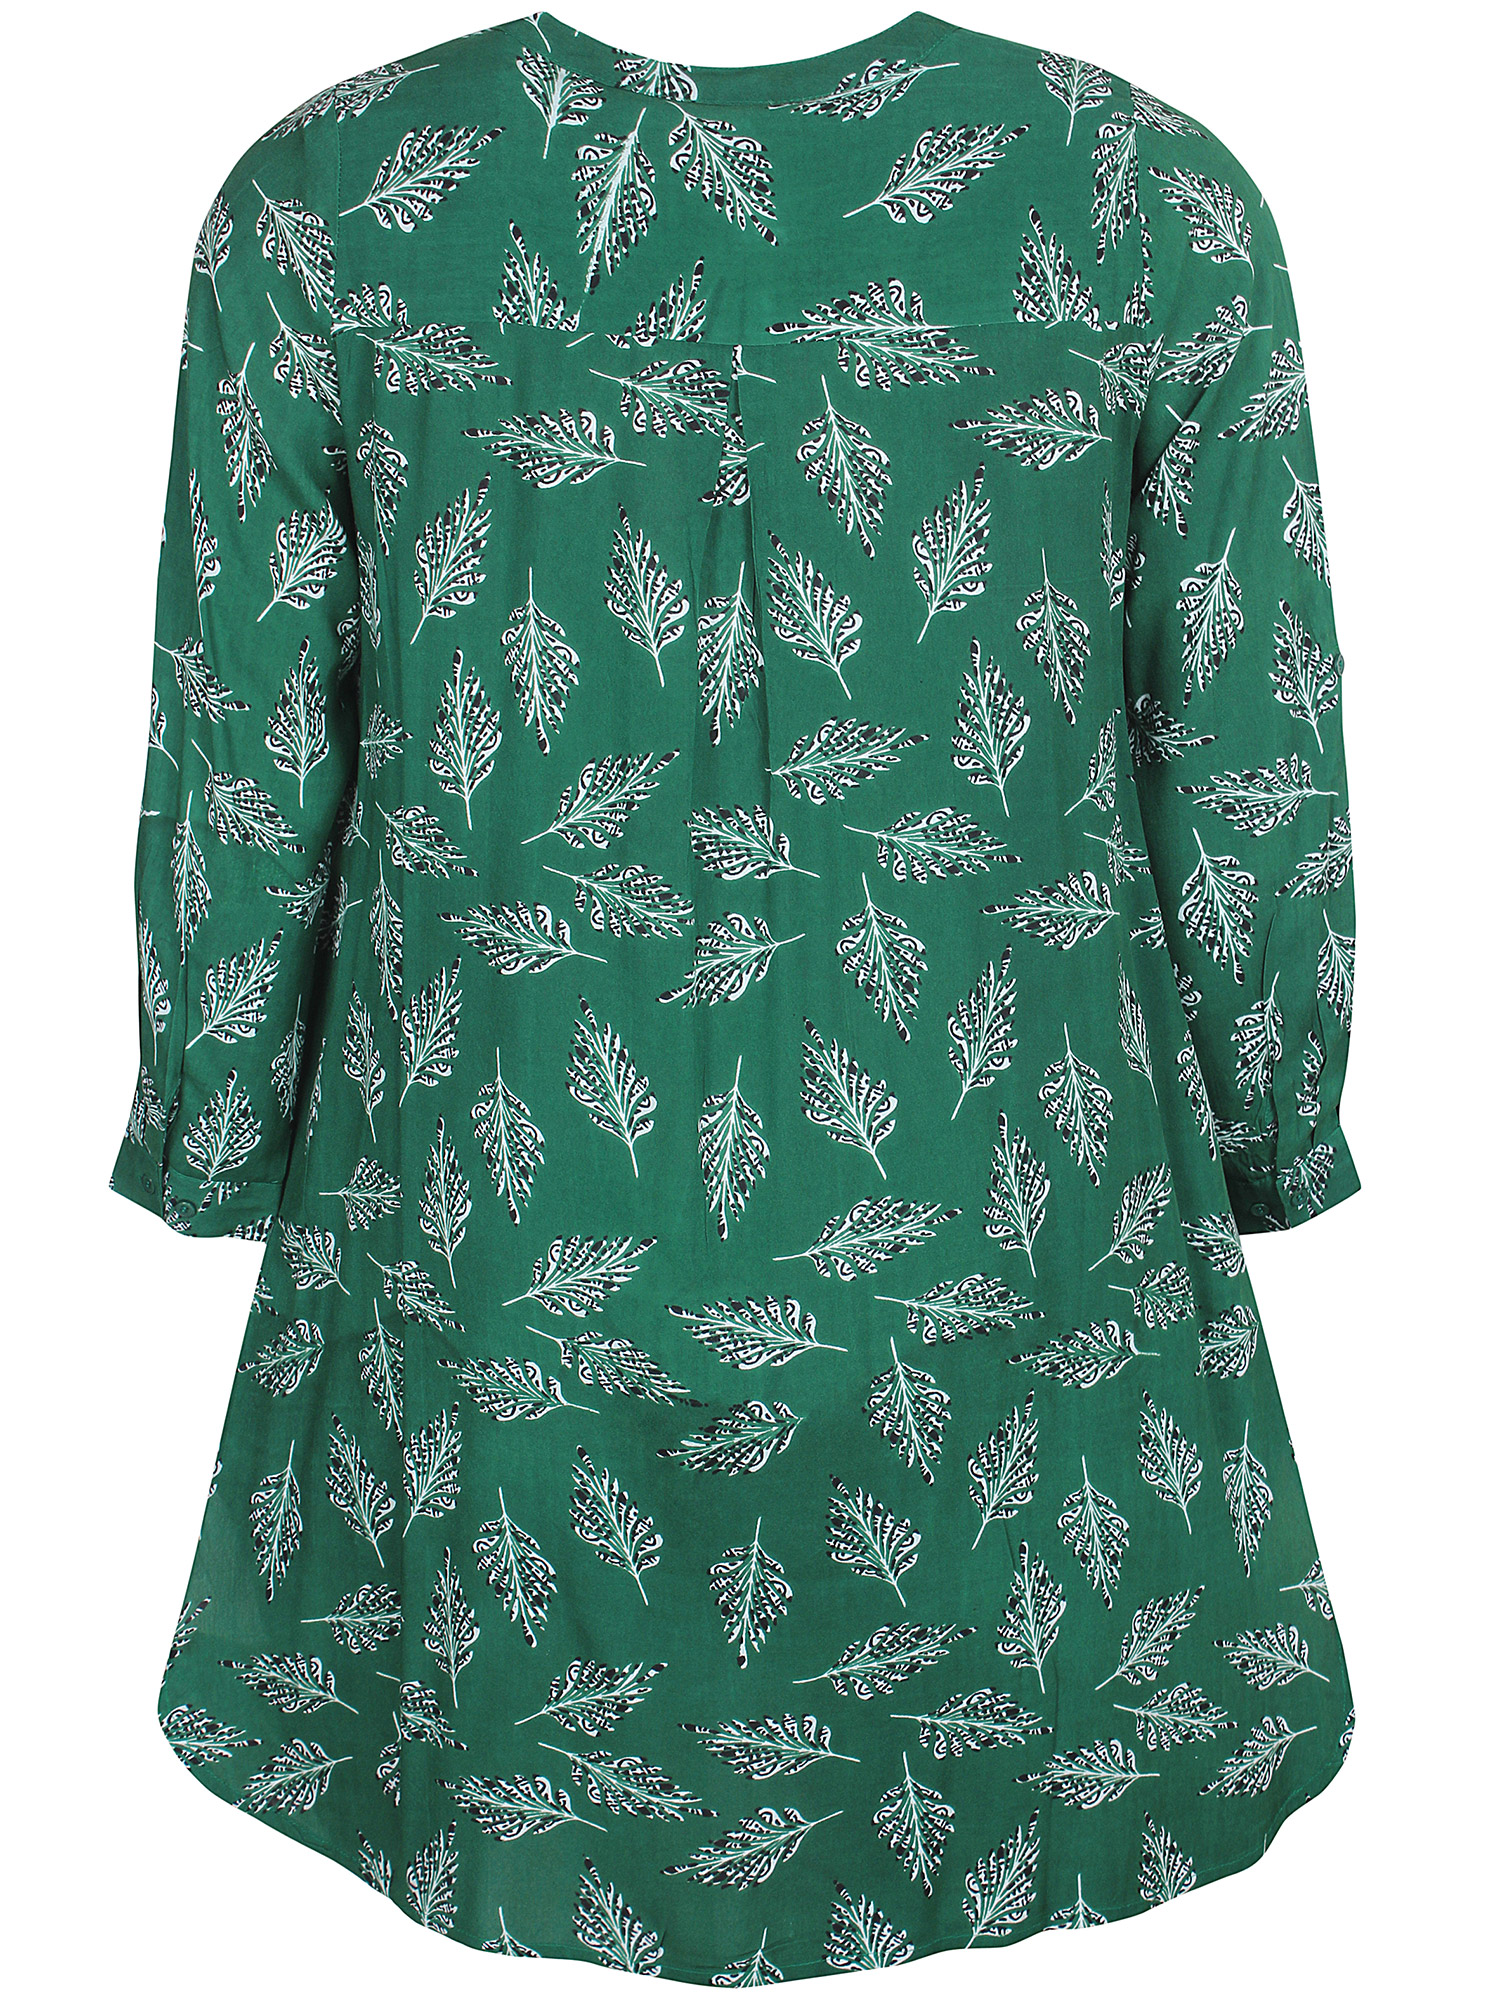 Jimena - Flot grøn skjorte tunika i bæredygtig viskose modal med fint fjer print fra Zhenzi